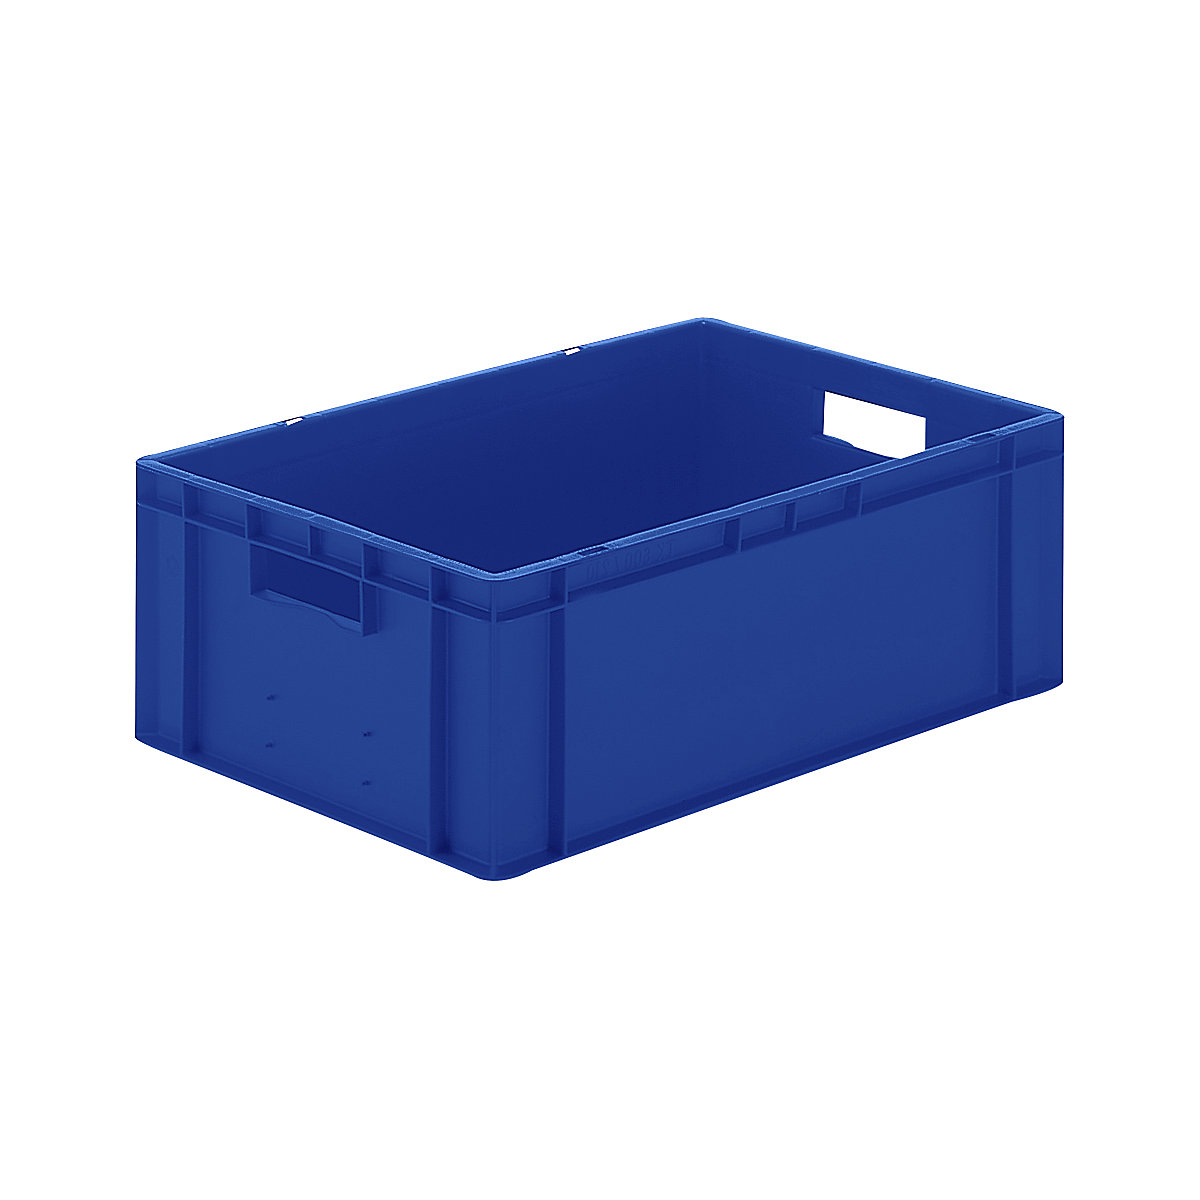 Euro-Format-Stapelbehälter, Wände und Boden geschlossen, LxBxH 600 x 400 x 210 mm, blau, VE 5 Stk-6